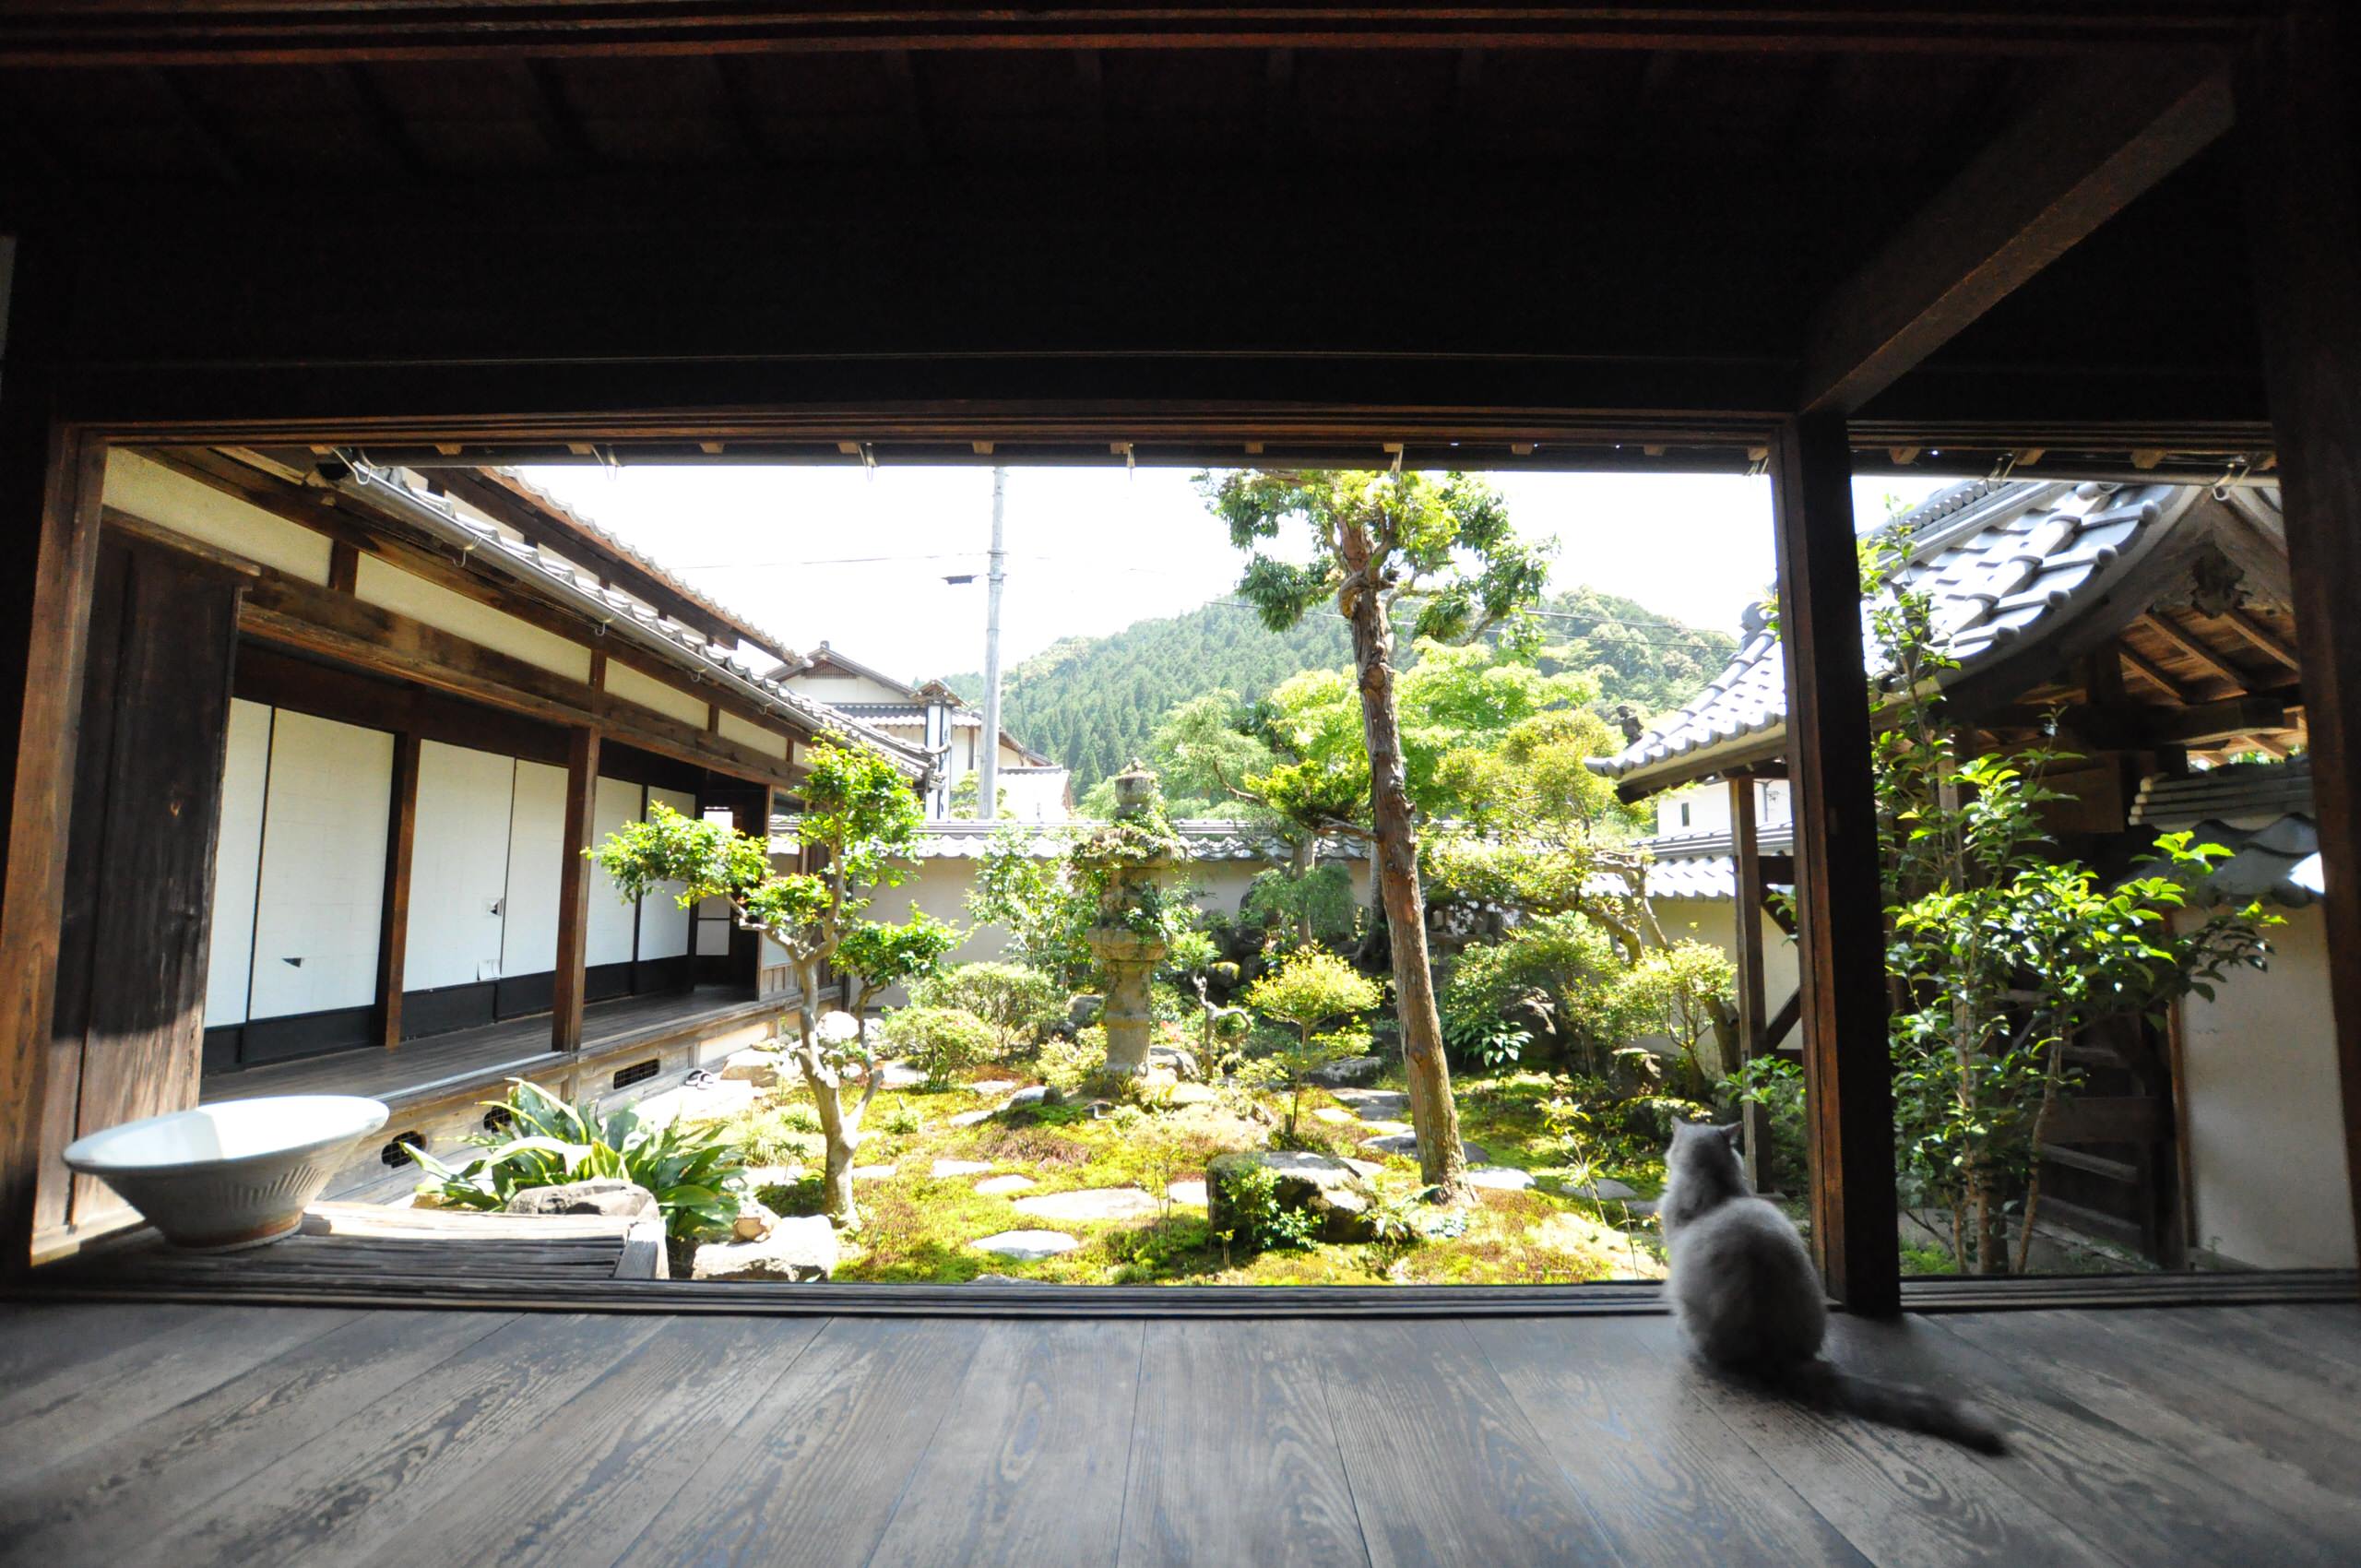 Японский сад камней: уличный и настольный своими руками (15 фото)